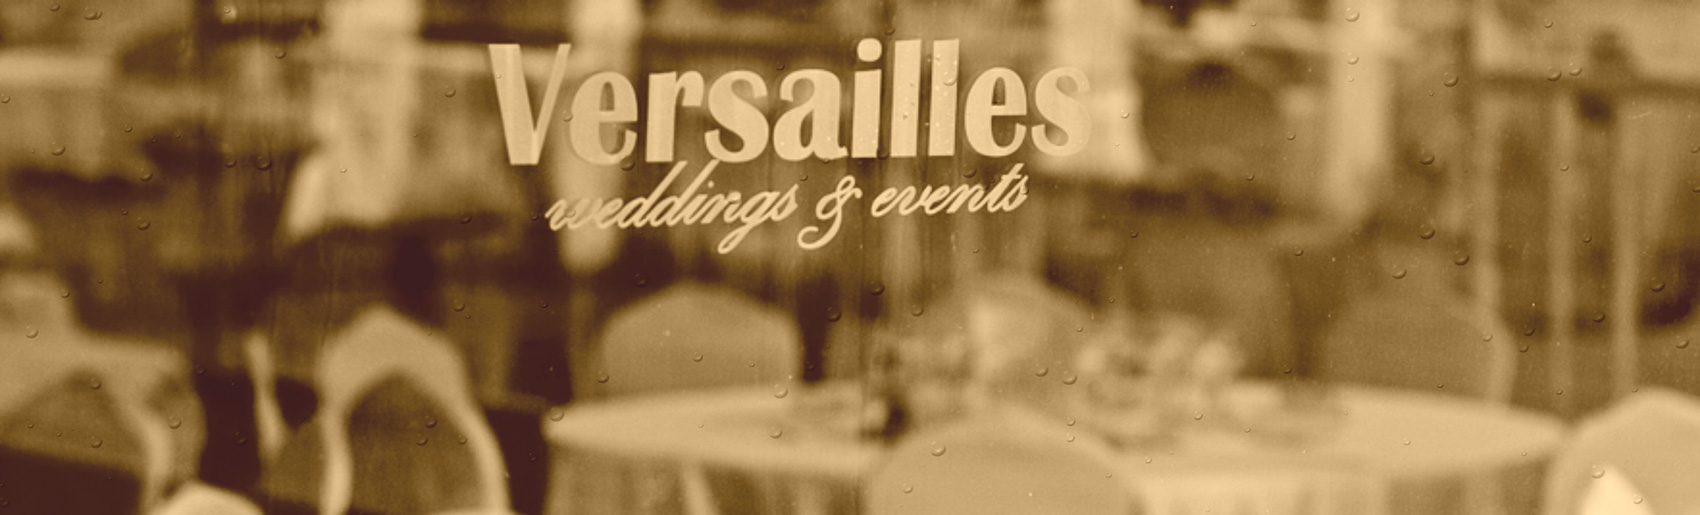 Versailles nunta la cort header 08